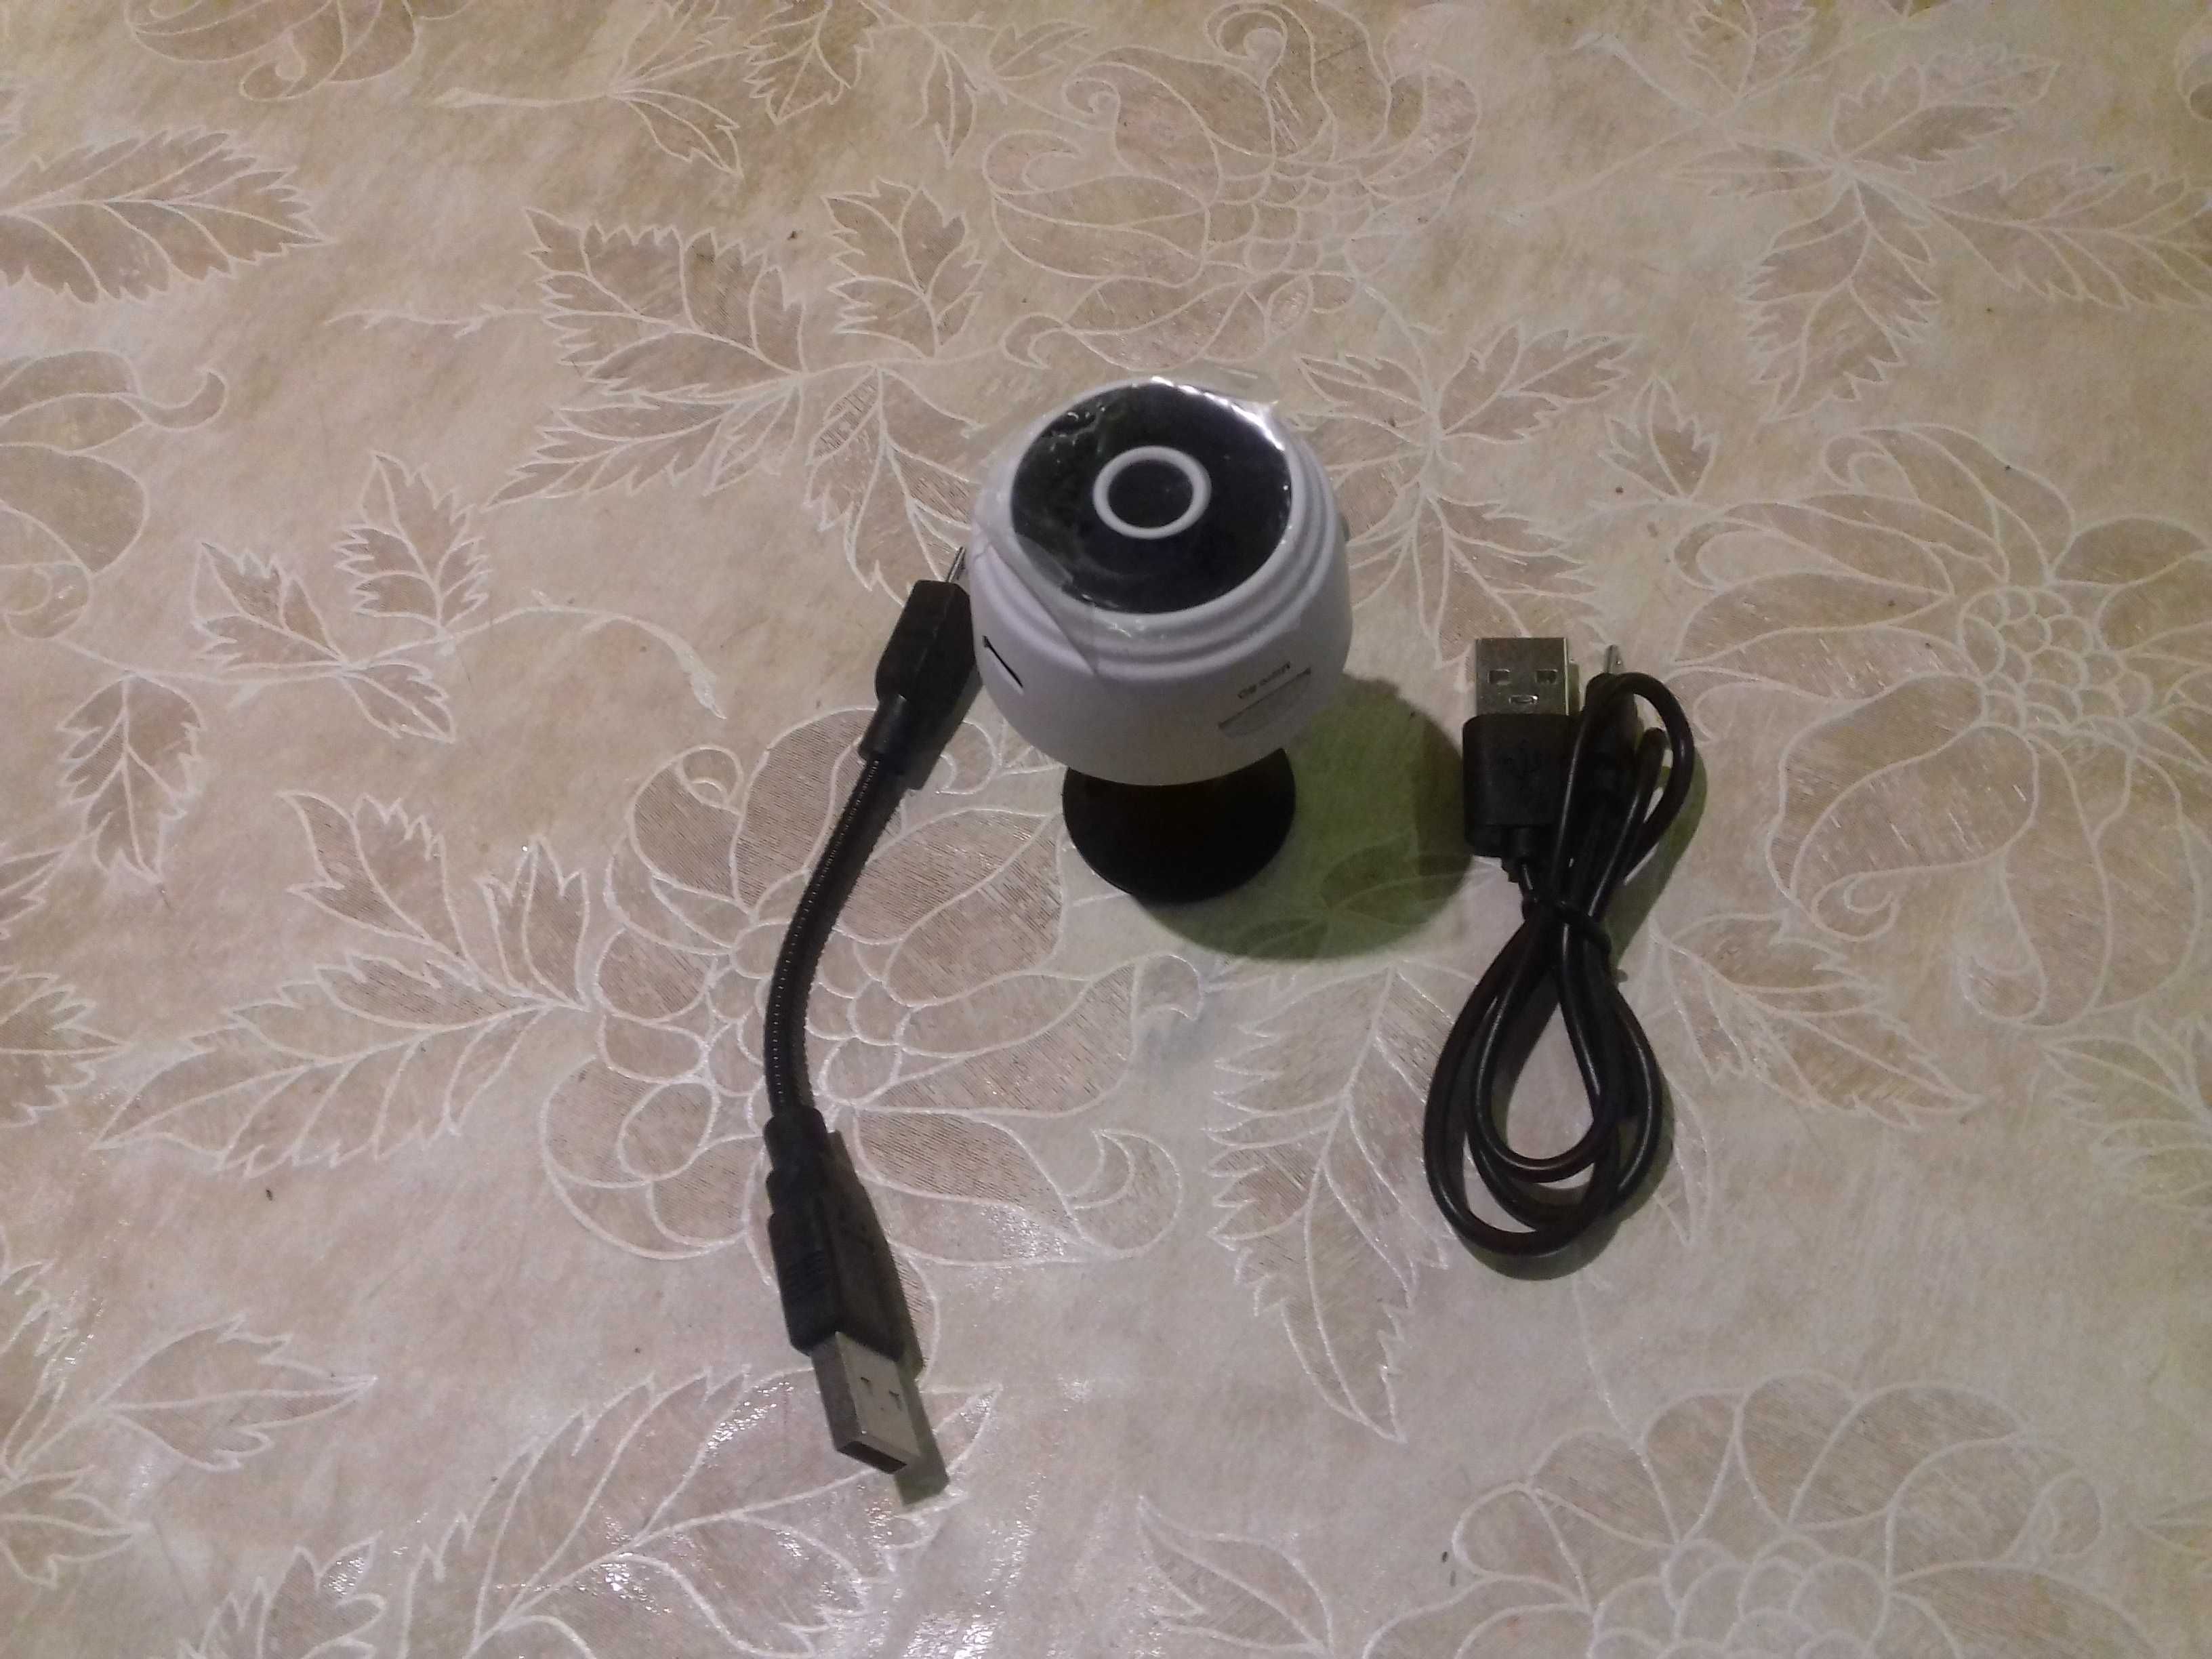 камера WIFI за видеонаблюдение